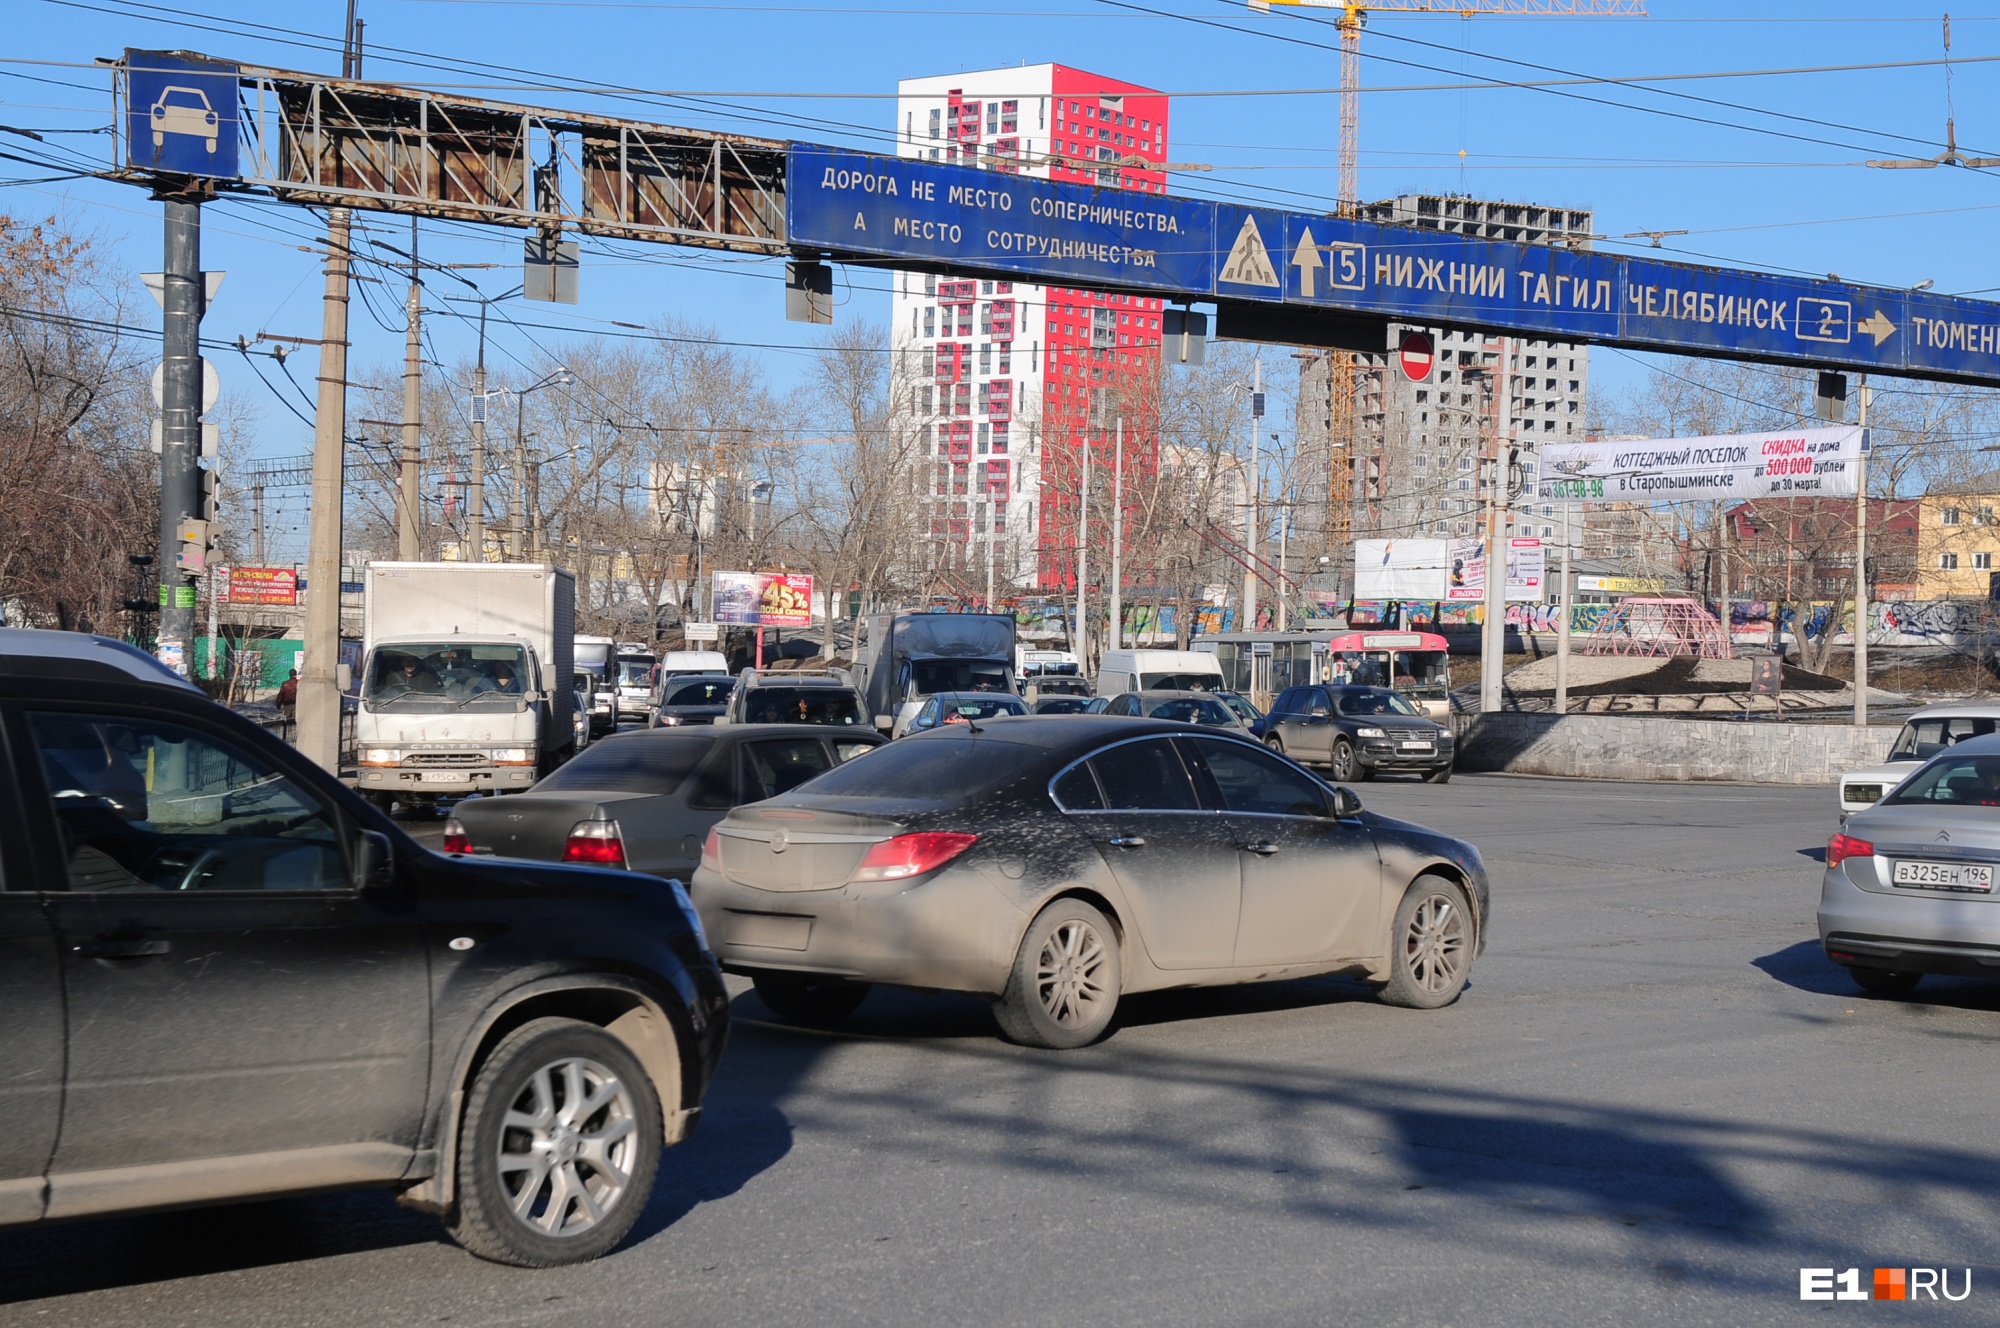 Движение будет парализовано. В Екатеринбурге из-за эстафеты закроют три улицы